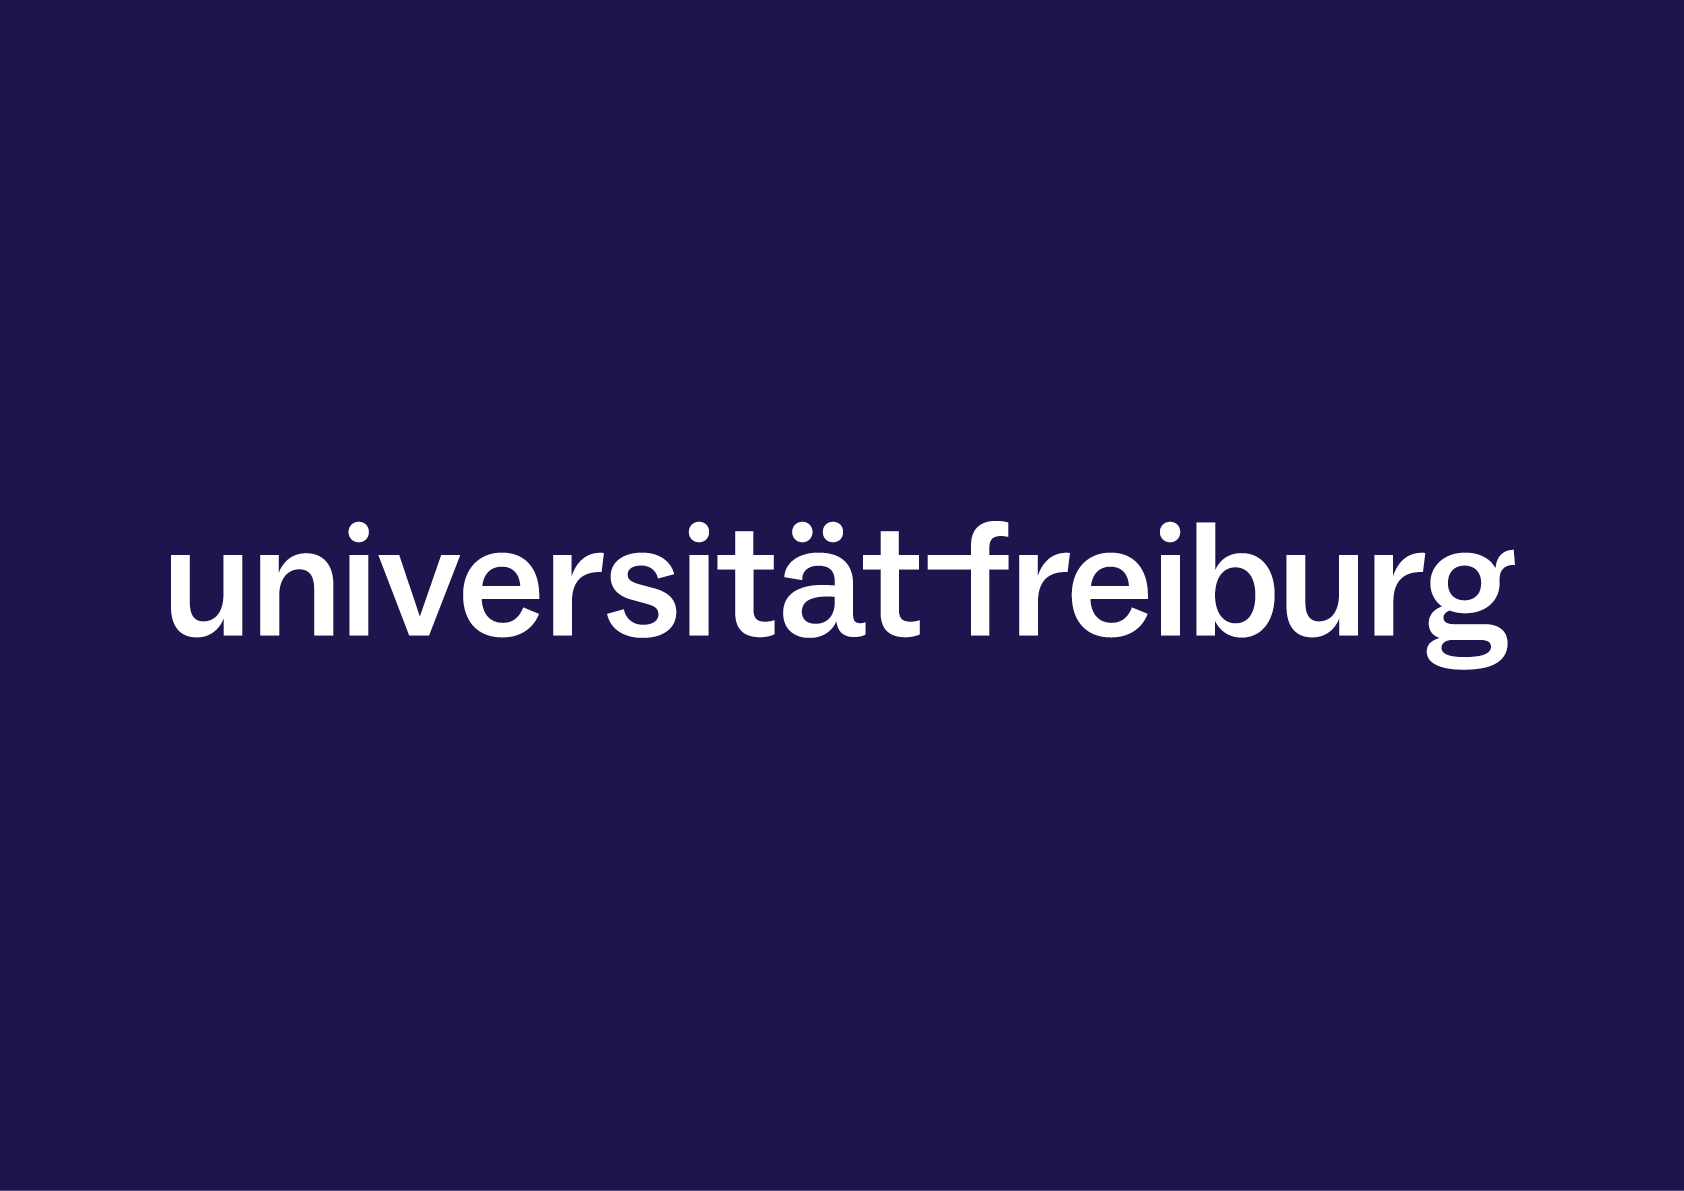 Weiße Wortmarke der Universität auf dunkelblauem Hintergrund